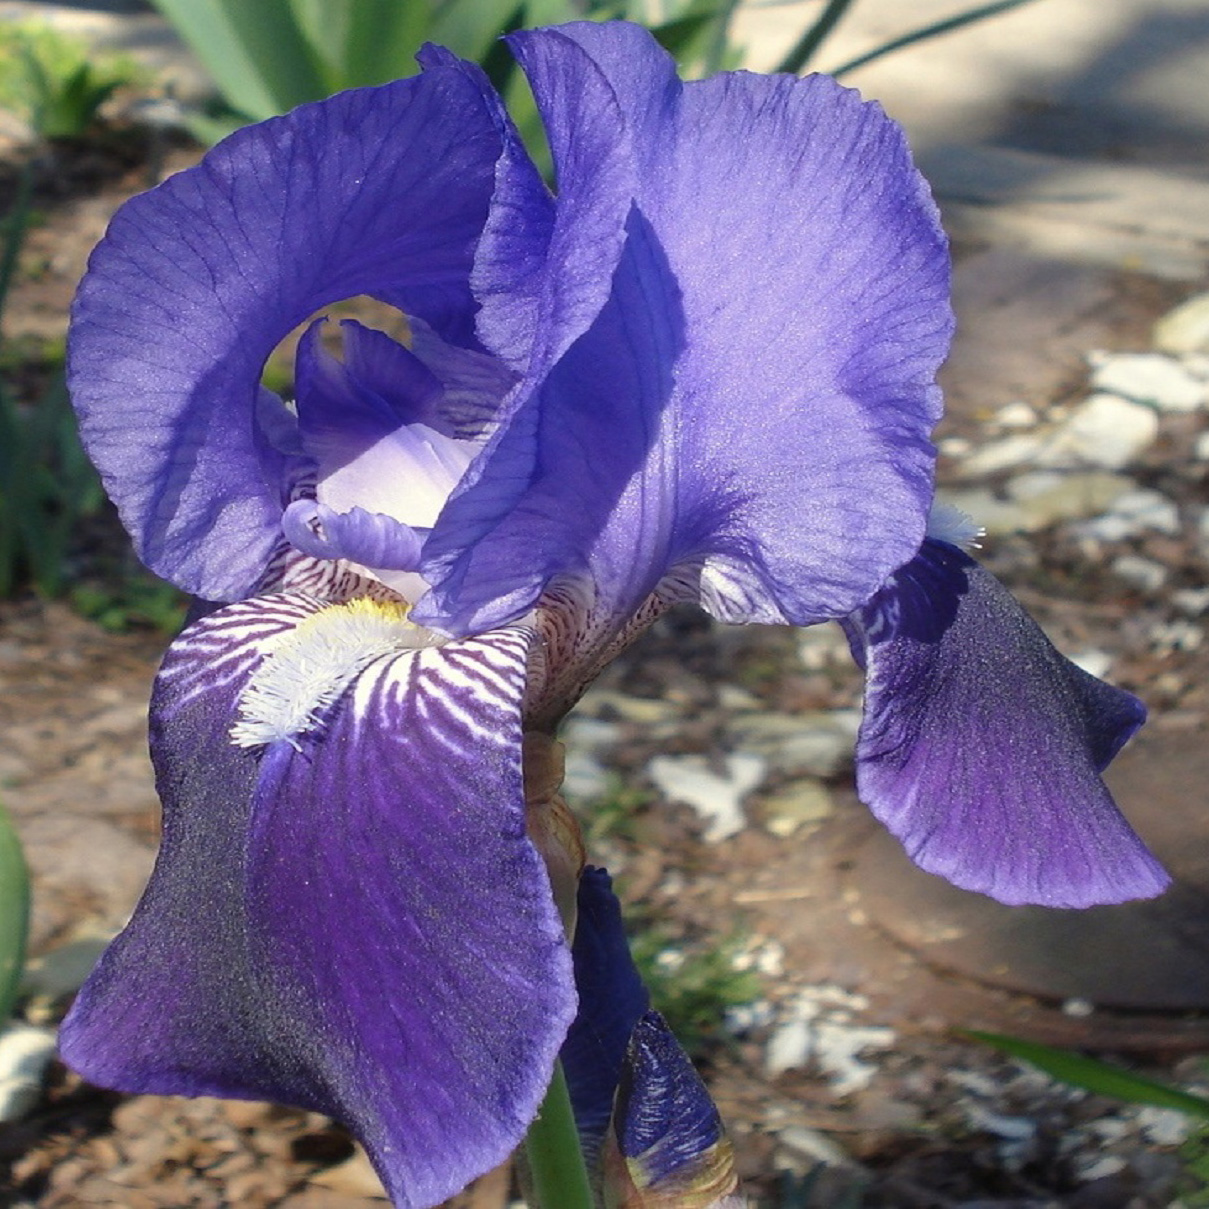 Iris Botanical Species